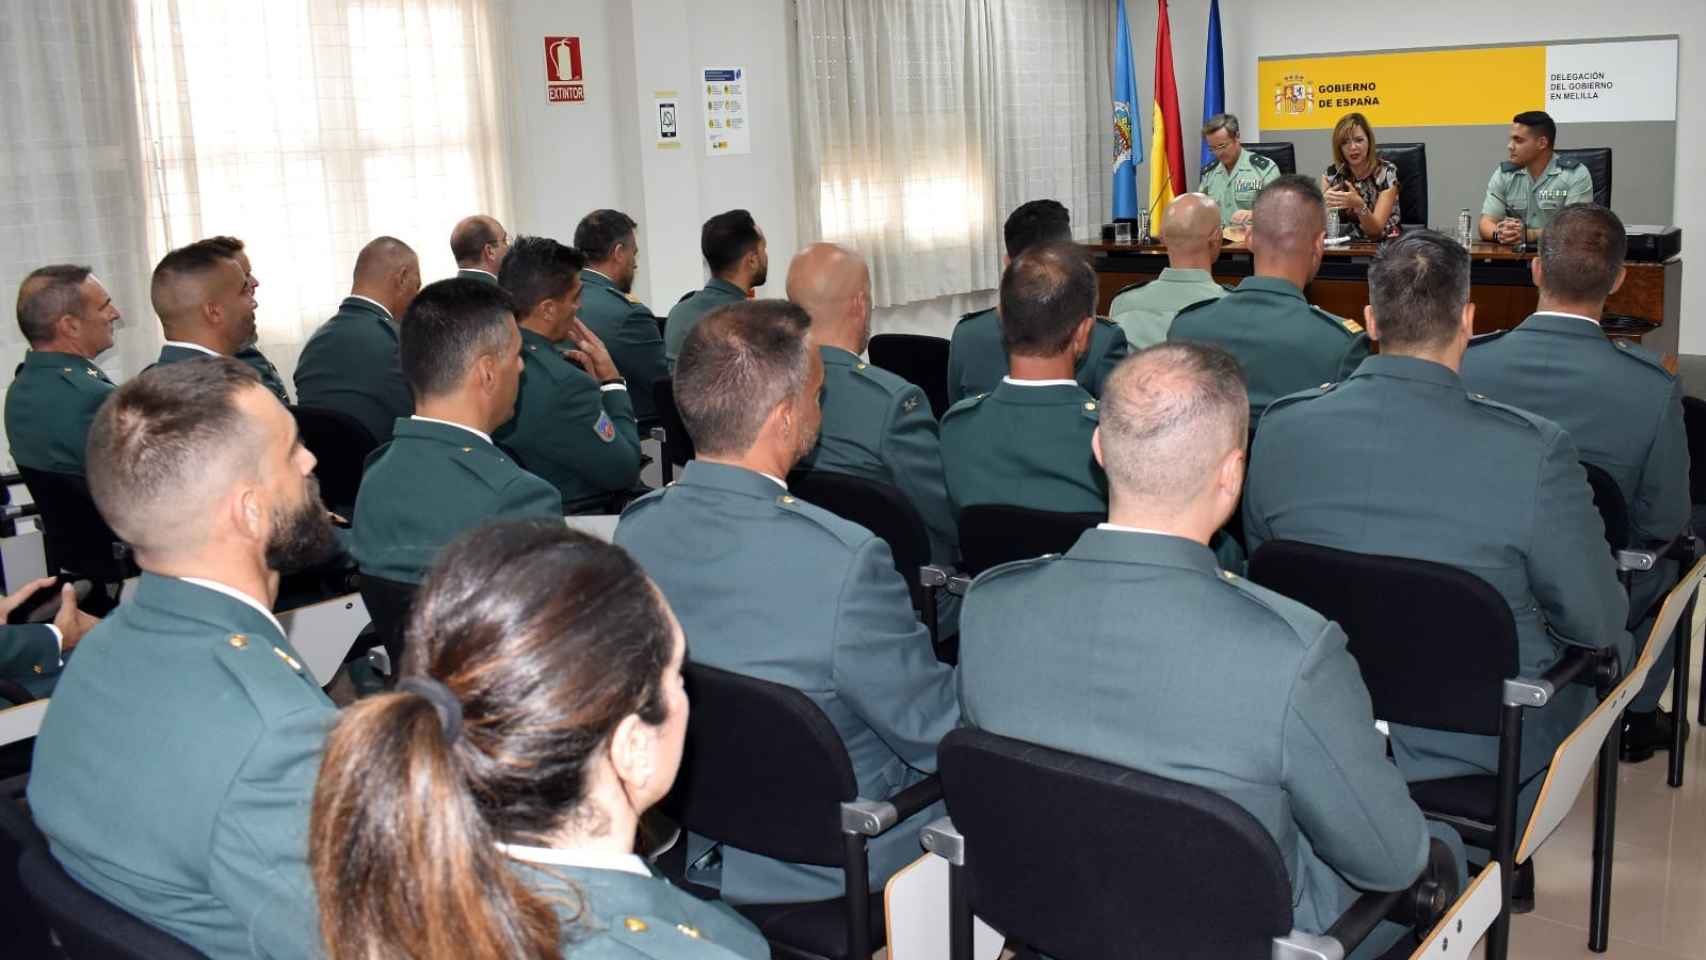 Los Guardias Civiles enviados a Melilla  en el acto de presentación en la Delegación de Gobierno por la delegada, Sabrina Moh.